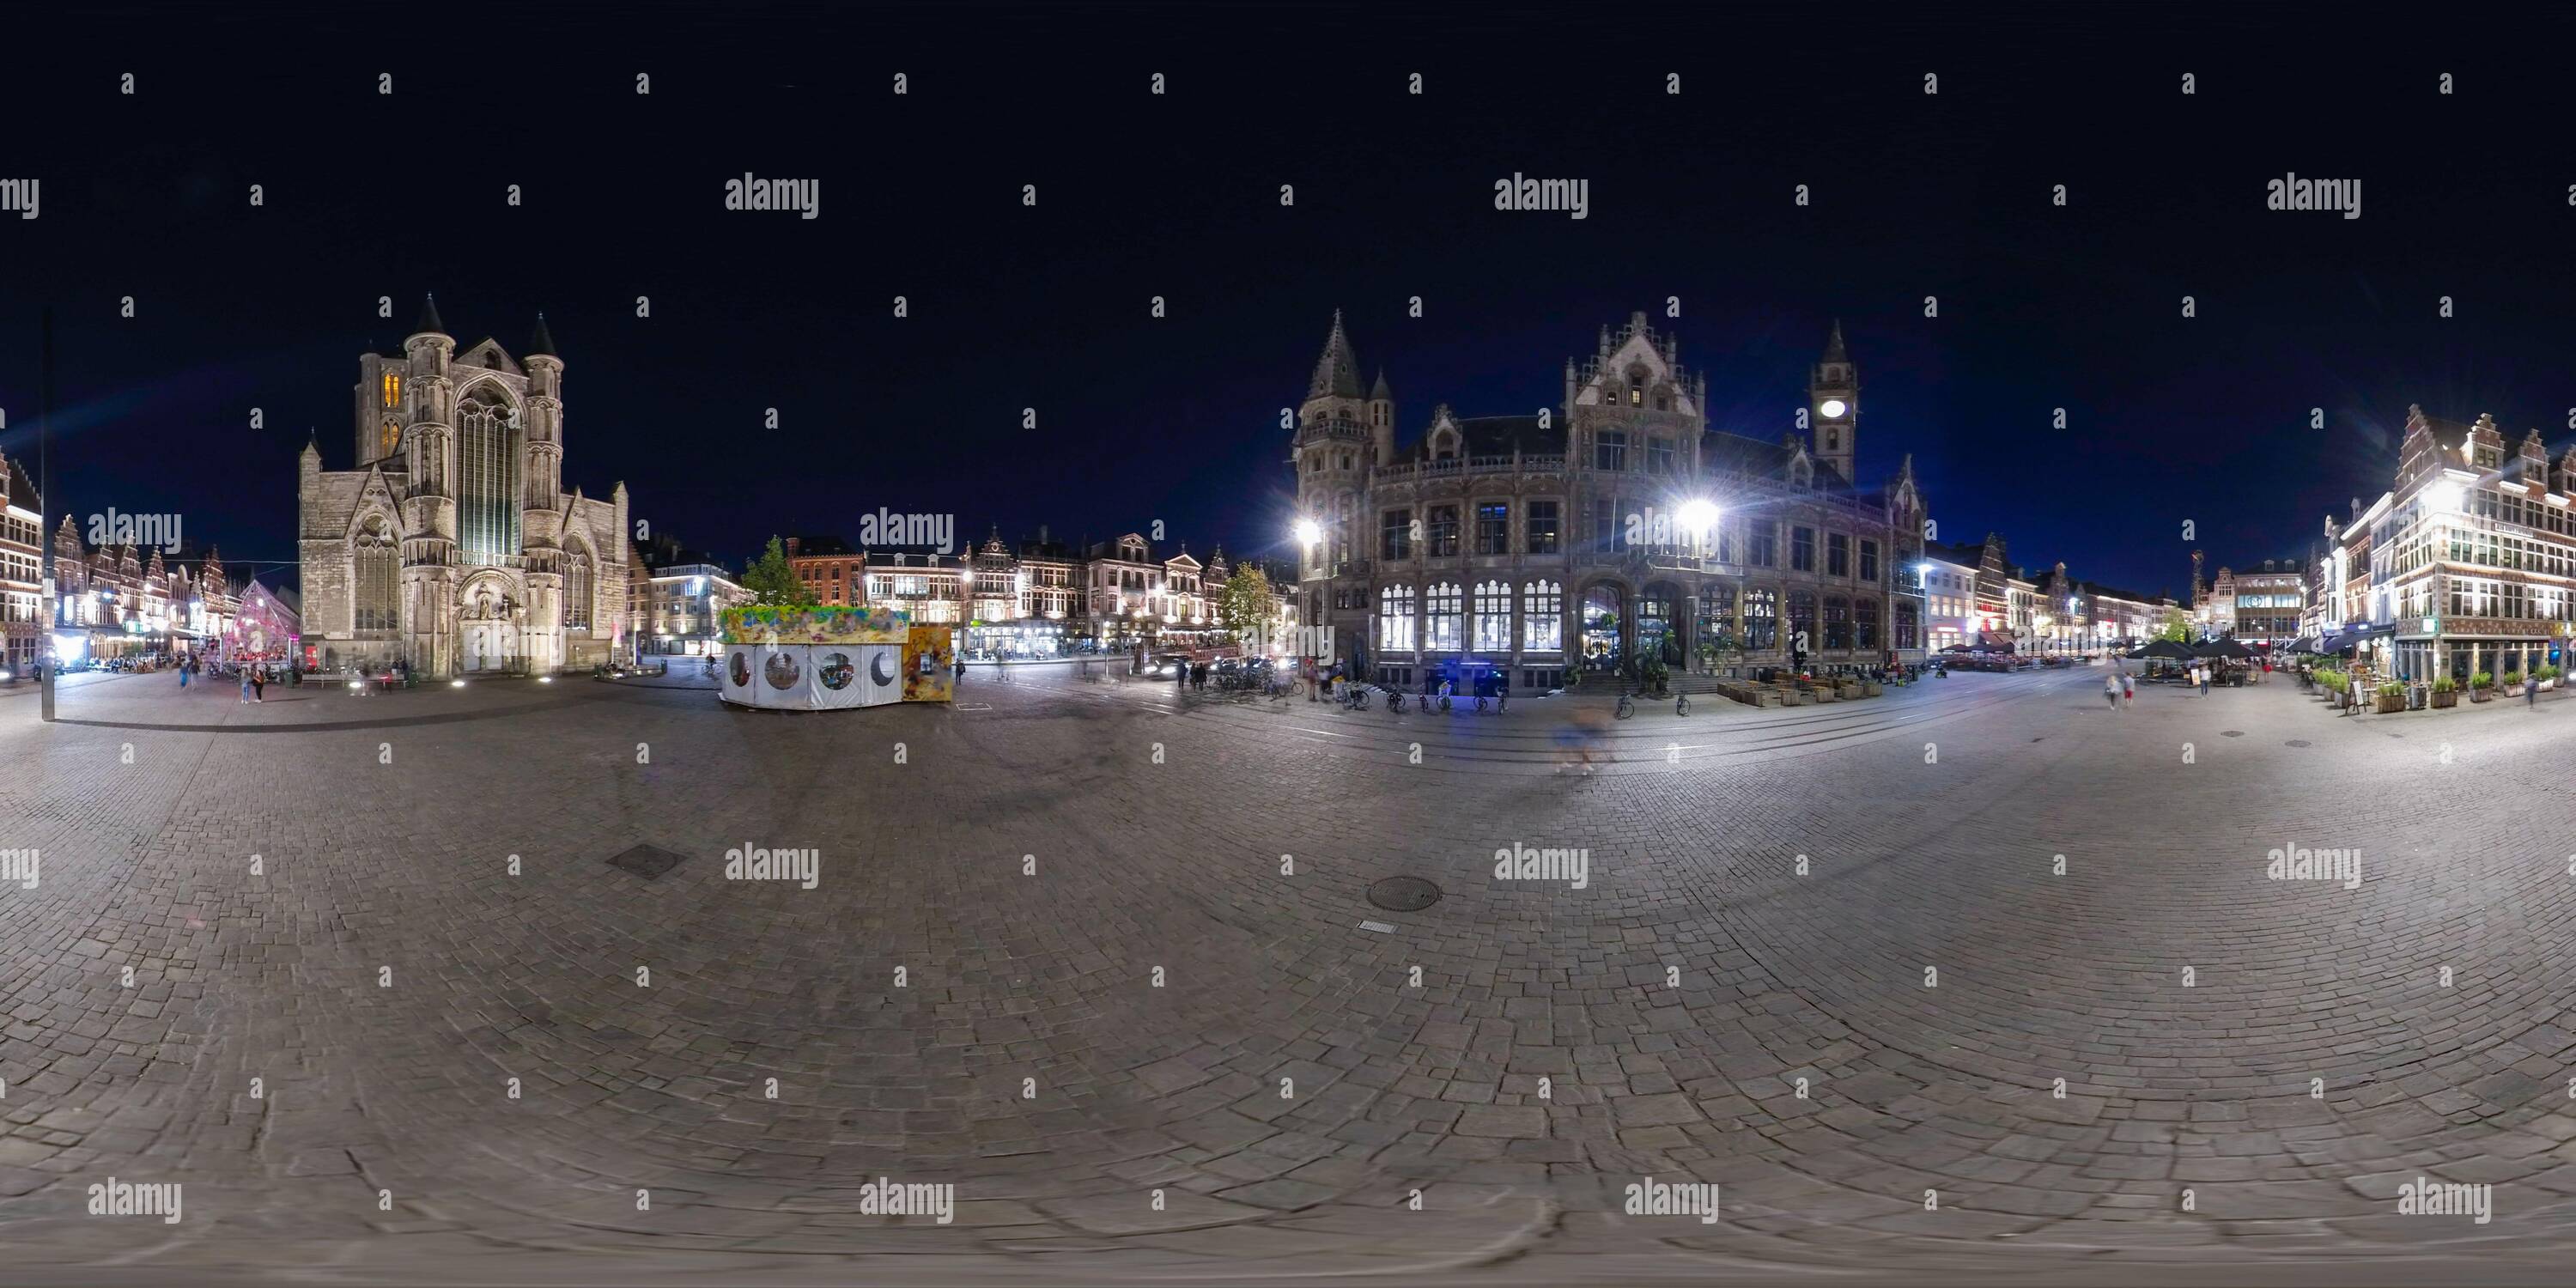 Vue panoramique à 360° de Gand, Belgique. Vers novembre 2019.360 degrés panorama de l'Église Saint-Nicolas la nuit. Carte d'environnement de projection équirectangulaire. Espher complet